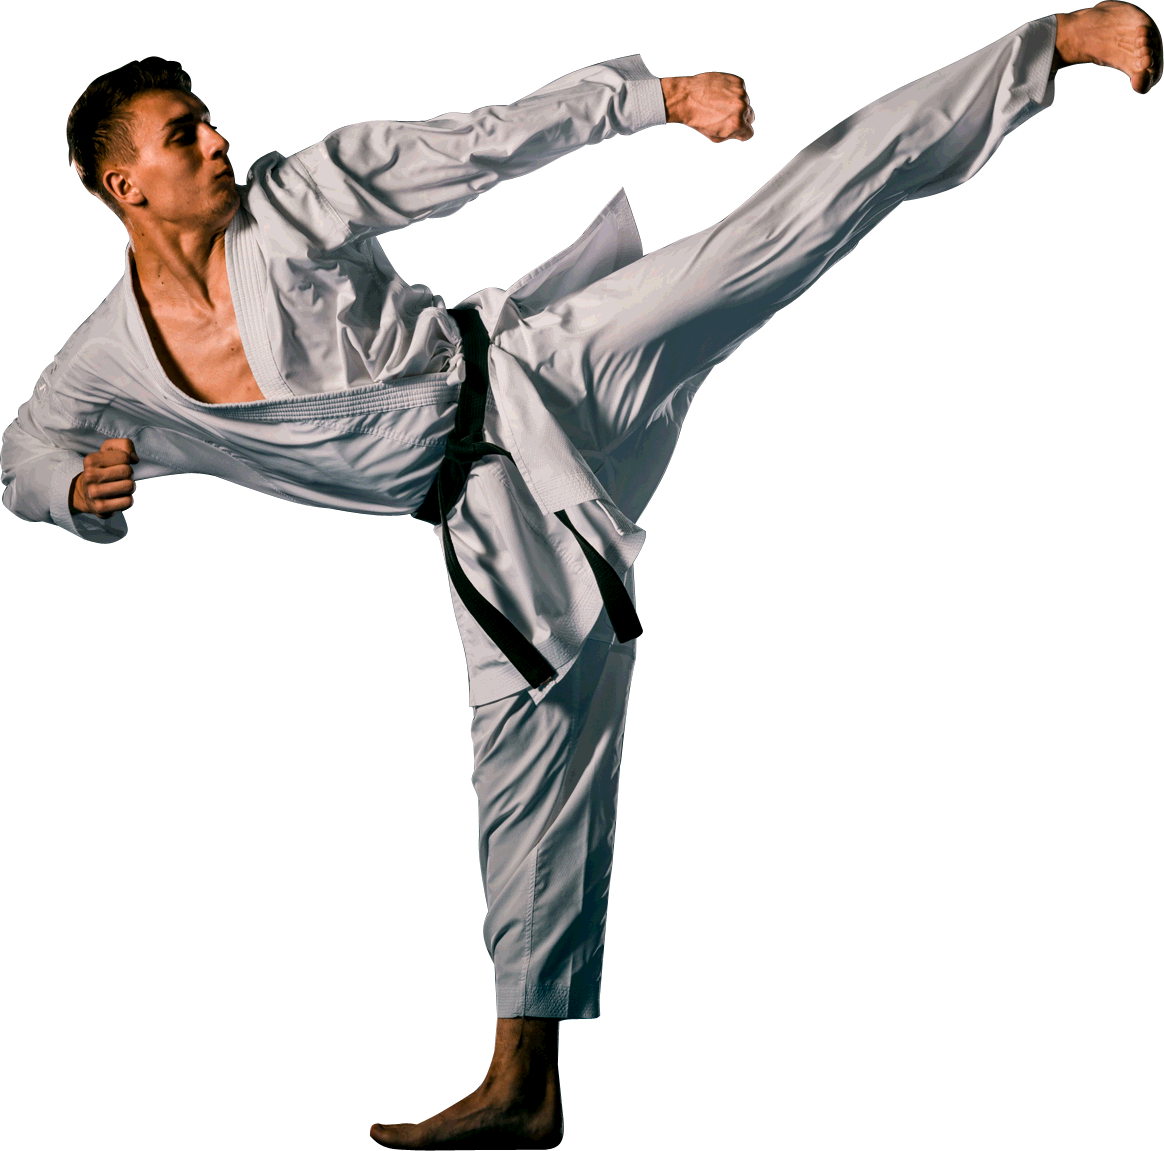 Karate man with black belt posing